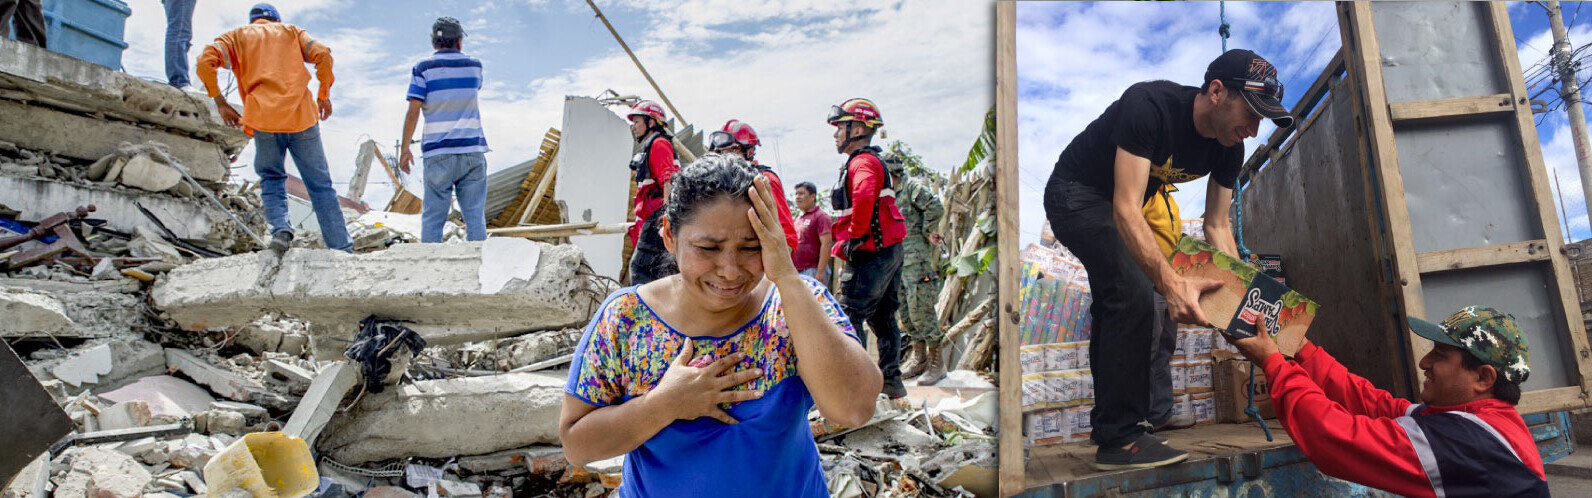 Eine Frau steht in Ecuador weinend hinter Trümmern. Gleichzeitig geben Helfer Pakete in der von Erdbeben erschütterten Region aus.